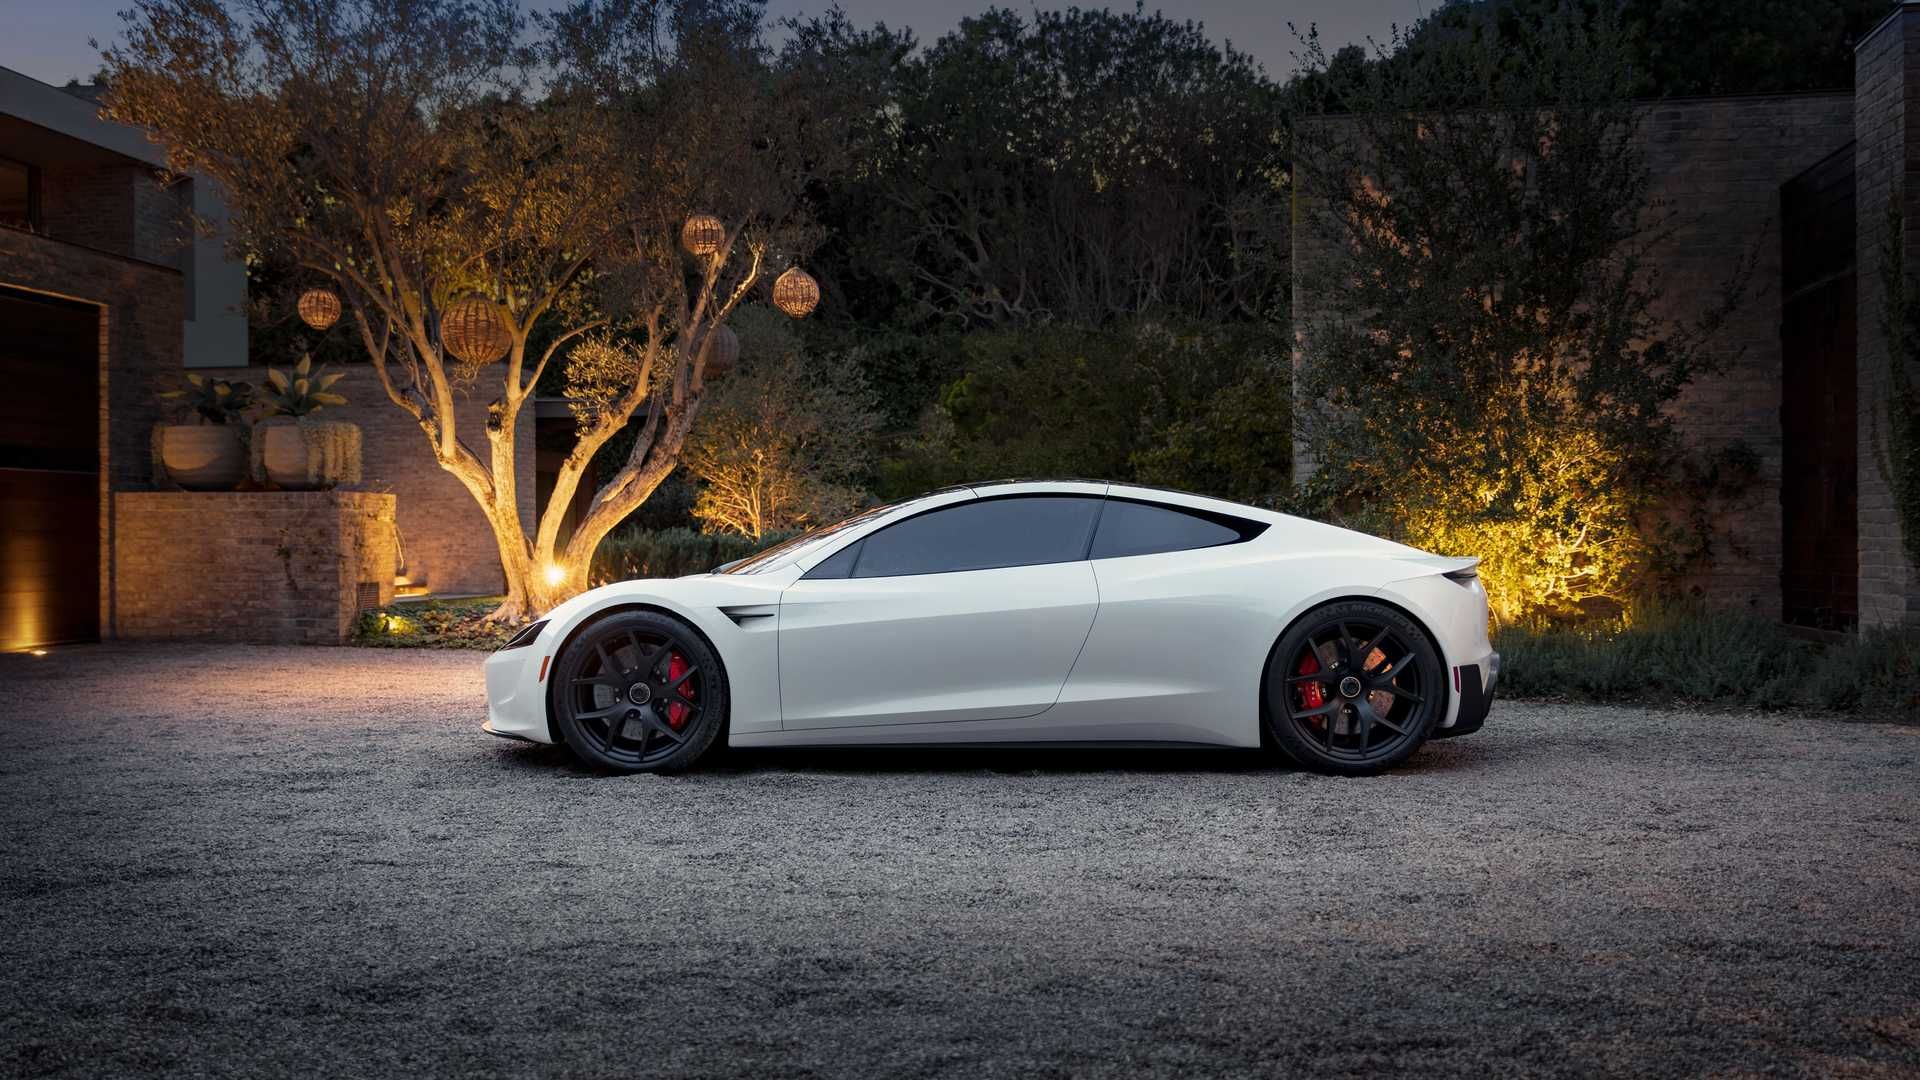 نمای جانبی خودروی الکتریکی تسلا رودستر / Tesla Roadster سفید رنگ